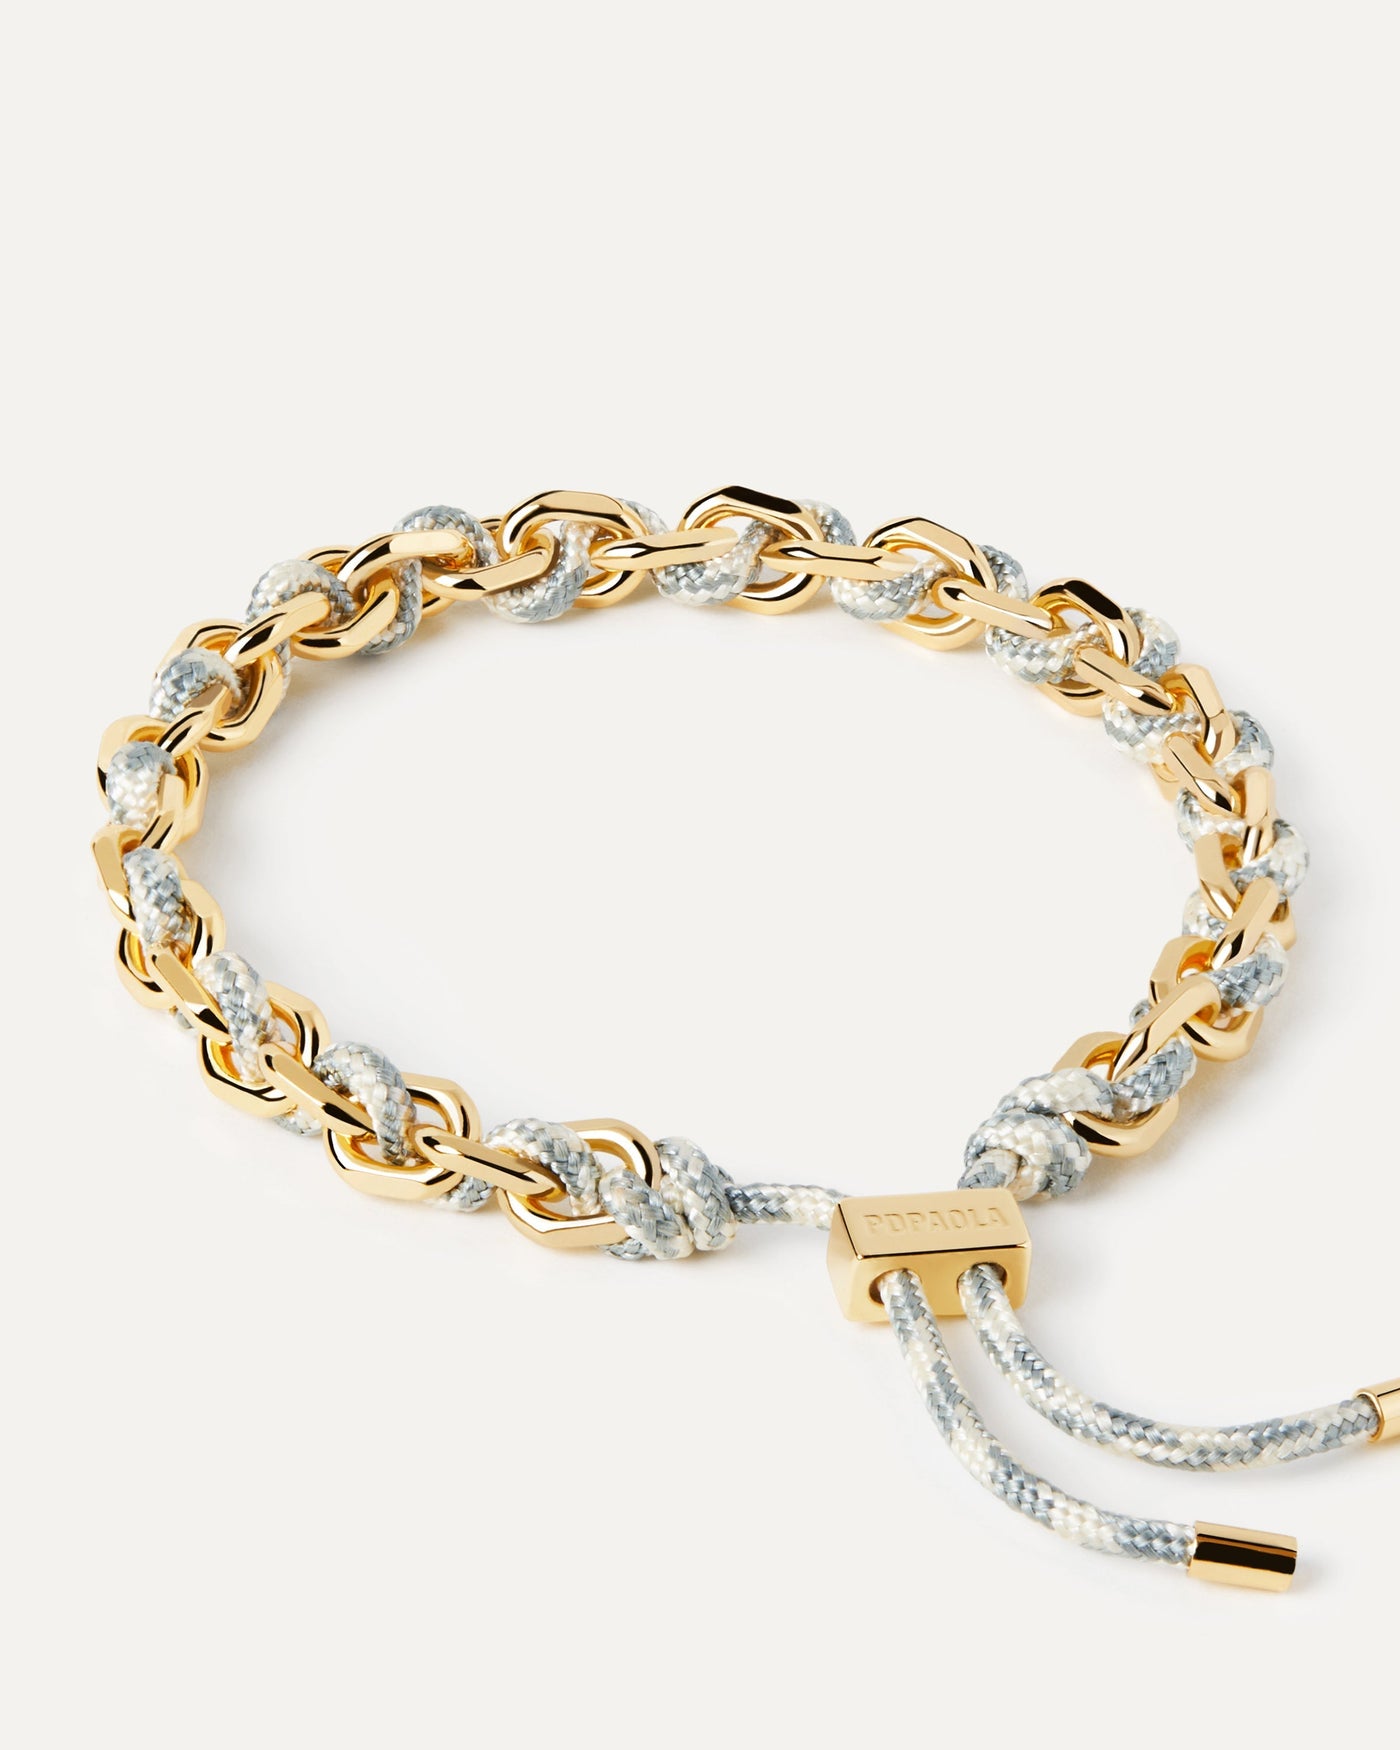 Sélection 2023 | Bracelet Cordon et Chaîne Sky. Bracelet chaîne dorée avec corde bleue et blanche et fermoir coulissant ajustable. Découvrez les dernières nouveautés de chez PDPAOLA. Commandez et recevez votre bijou en toute sérénité. Livraison gratuite.